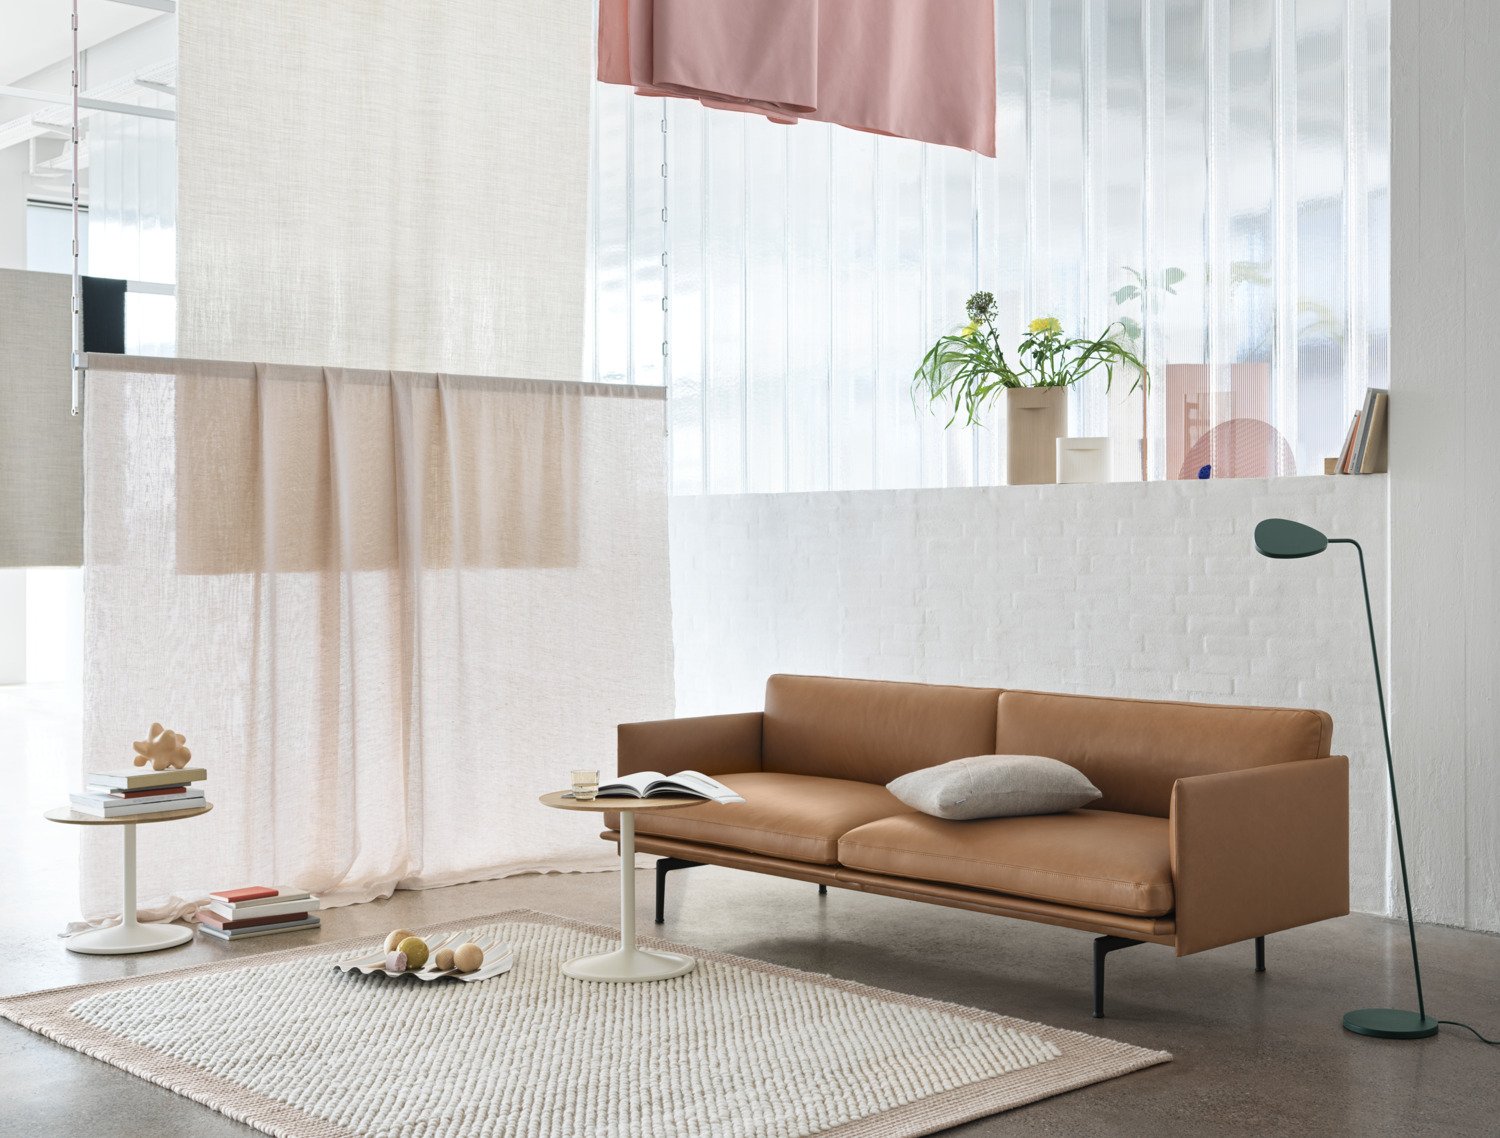 Outline 3er Sofa in Braun / Schwarz präsentiert im Onlineshop von KAQTU Design AG. 3er Sofa ist von Muuto